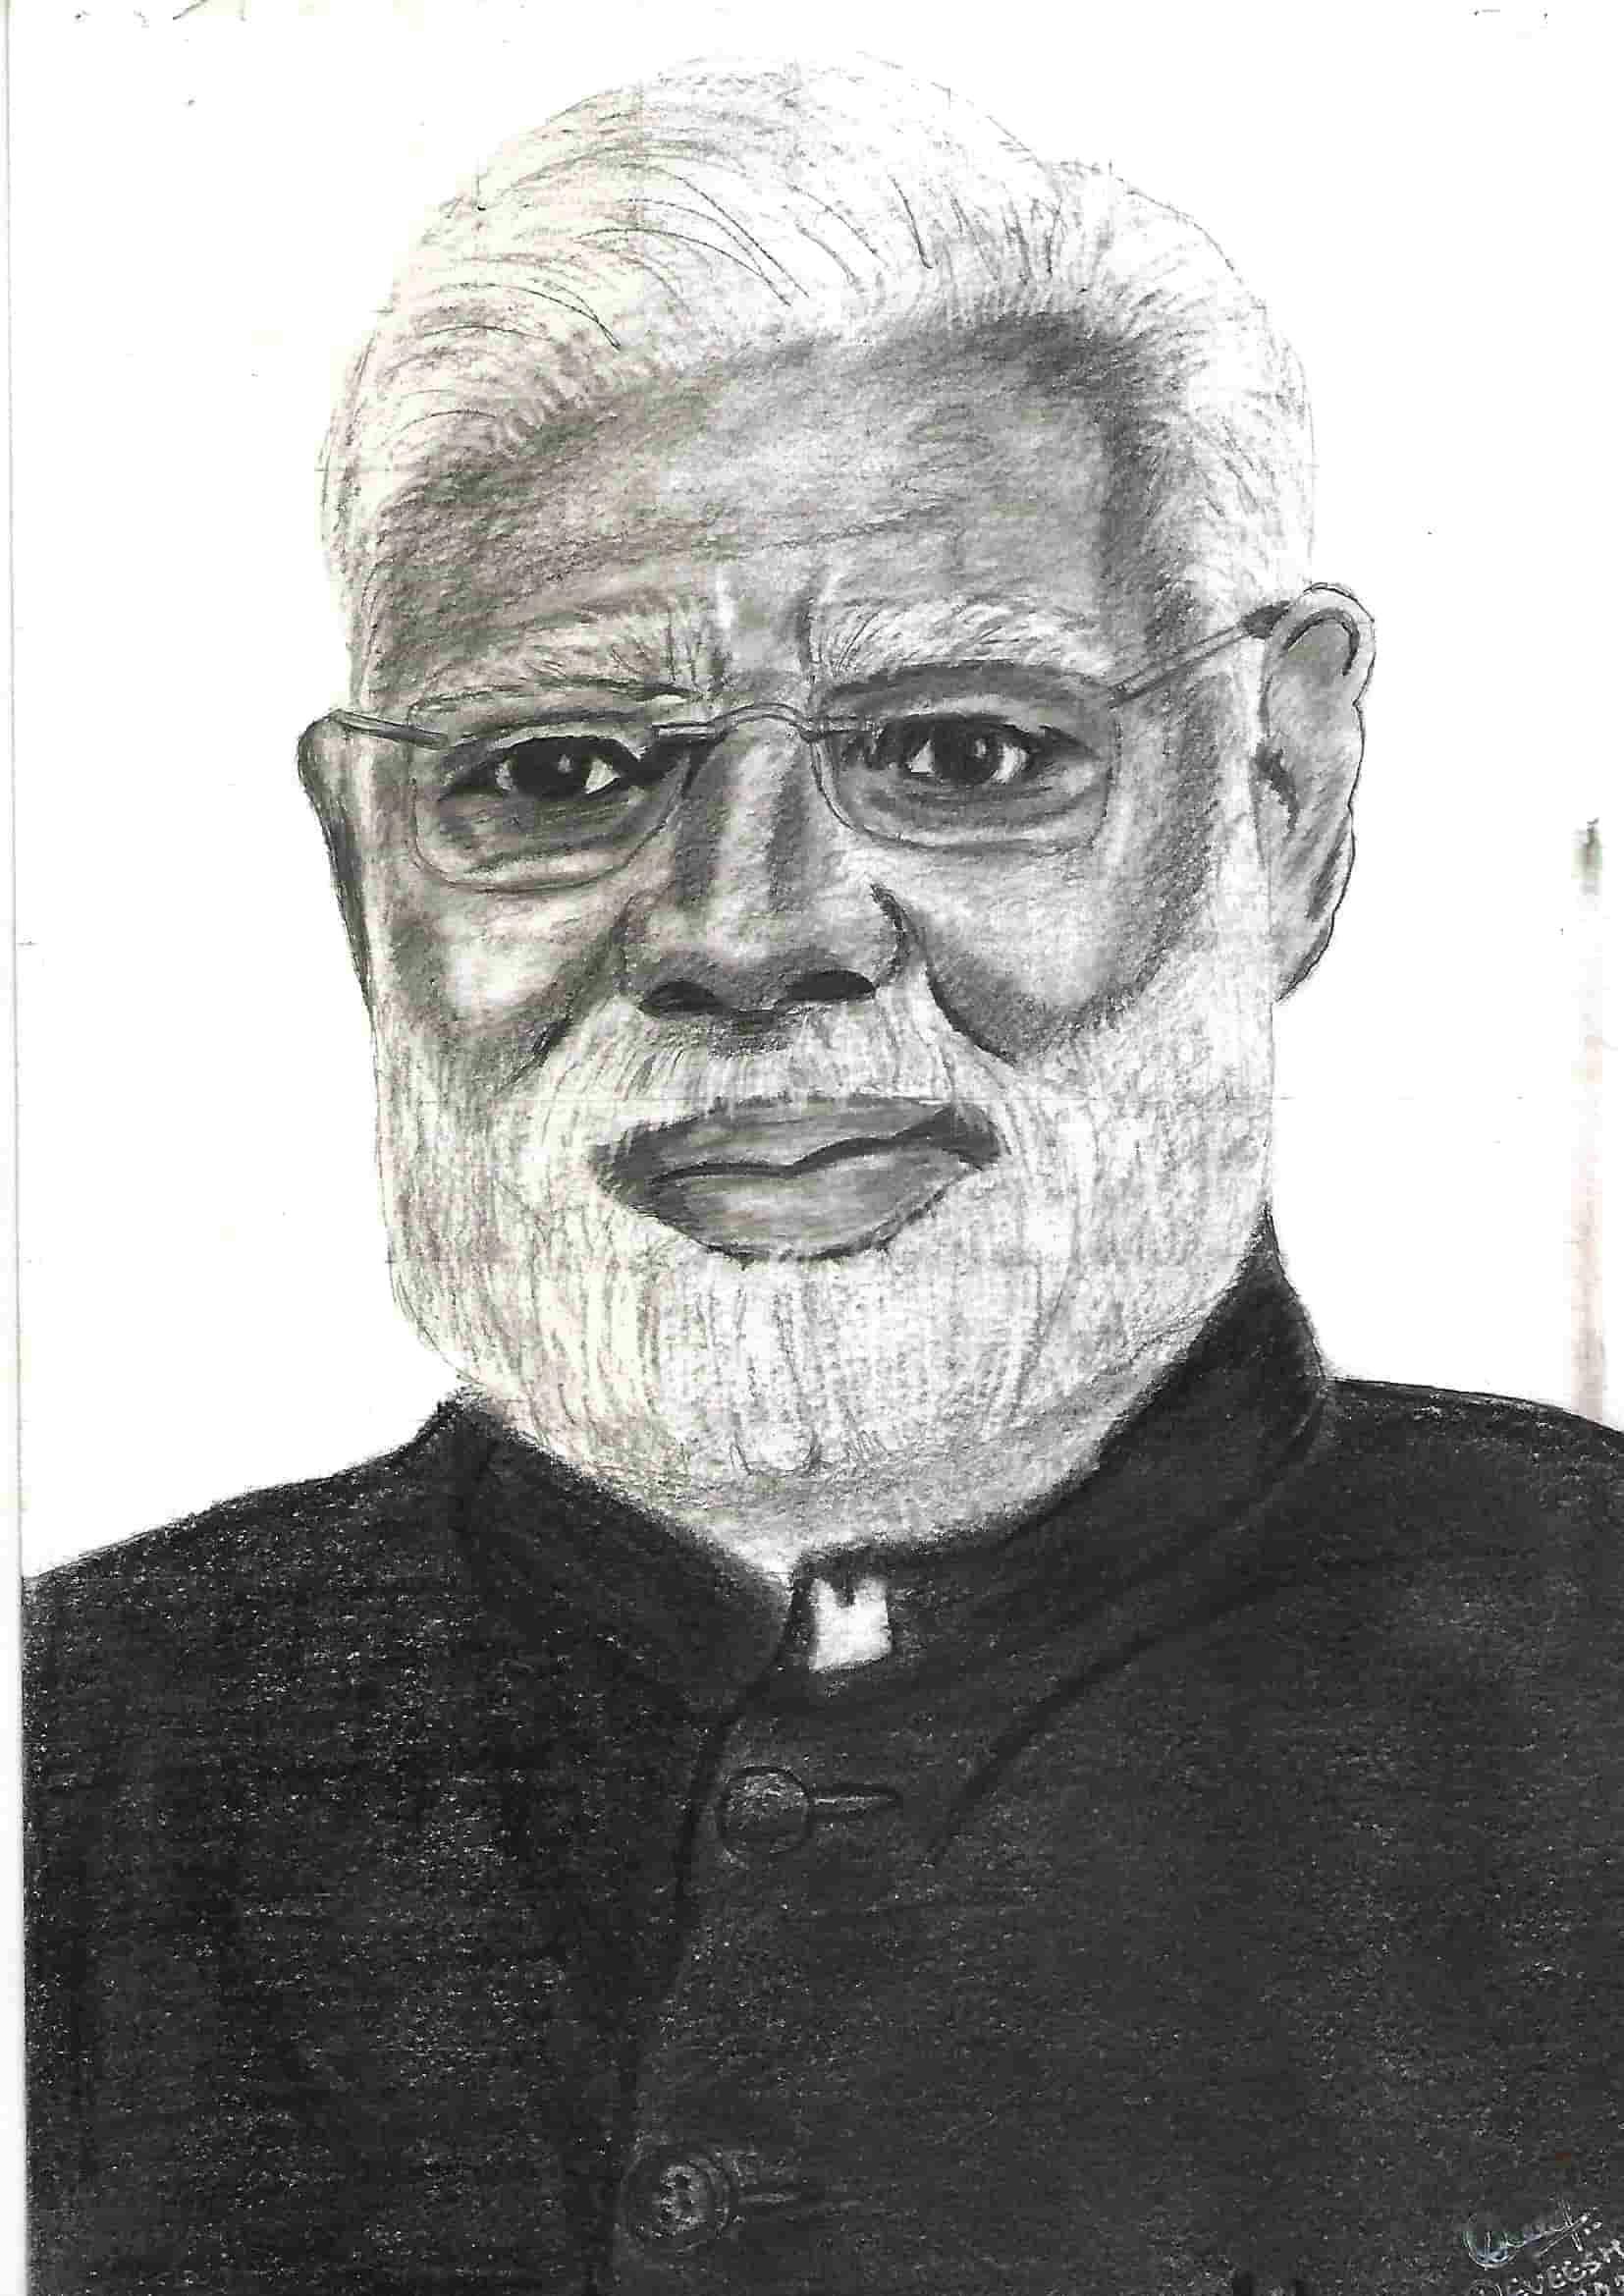 Pencil Sketch of Indian Prime Minister Narendra Modi